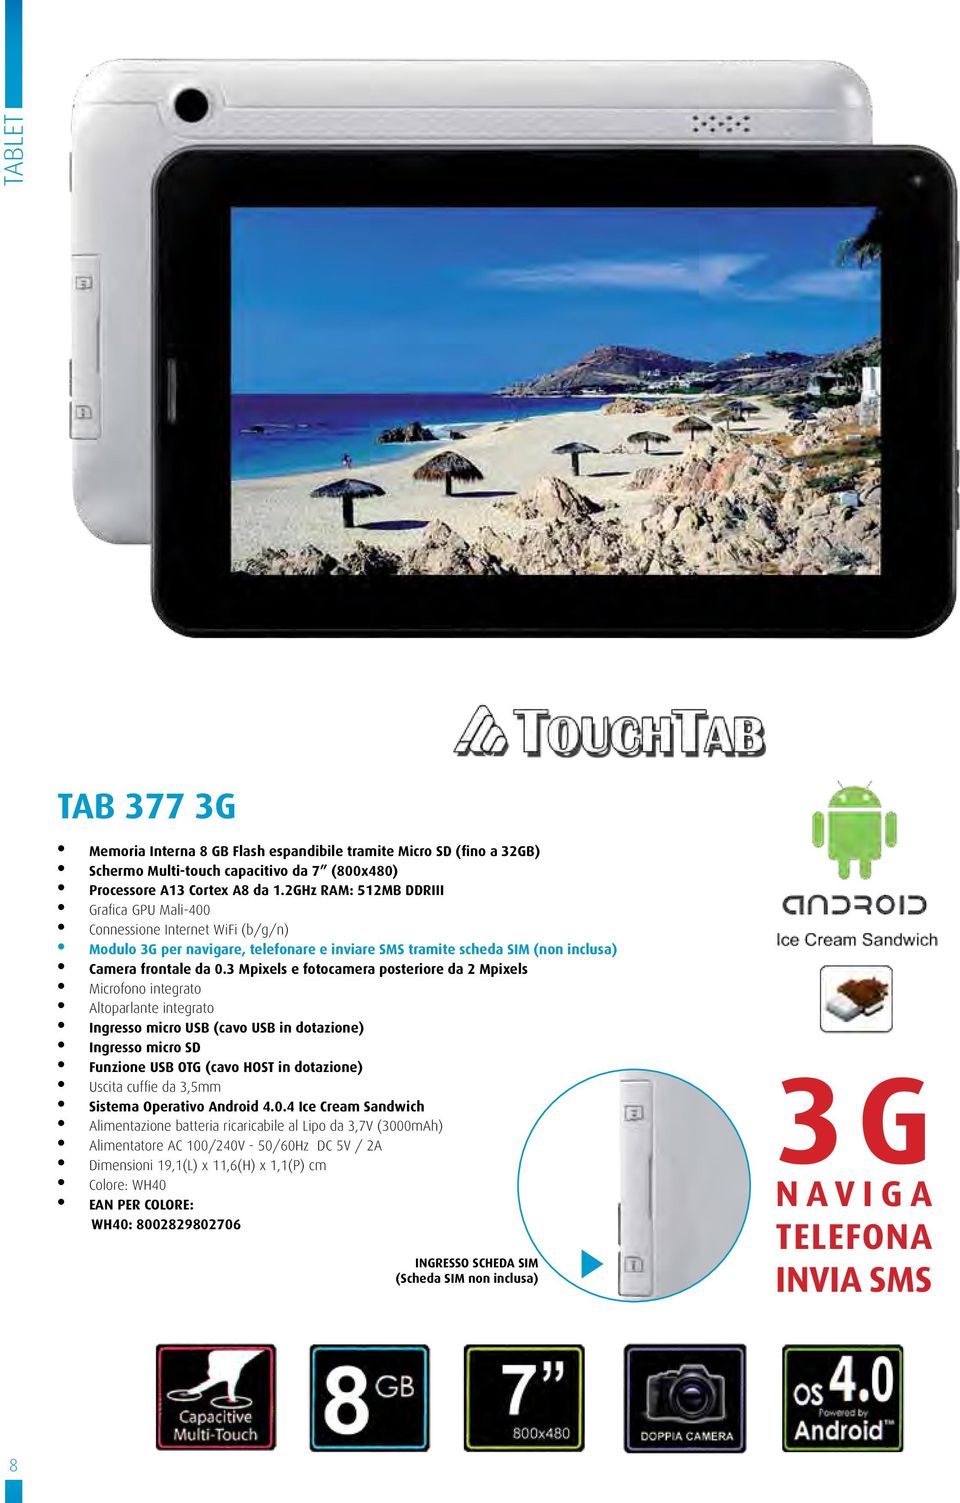 3 Mpixels e fotocamera posteriore da 2 Mpixels Altoparlante integrato Funzione USB OTG (cavo HOST in dotazione) Sistema Operativo Android 4.0.